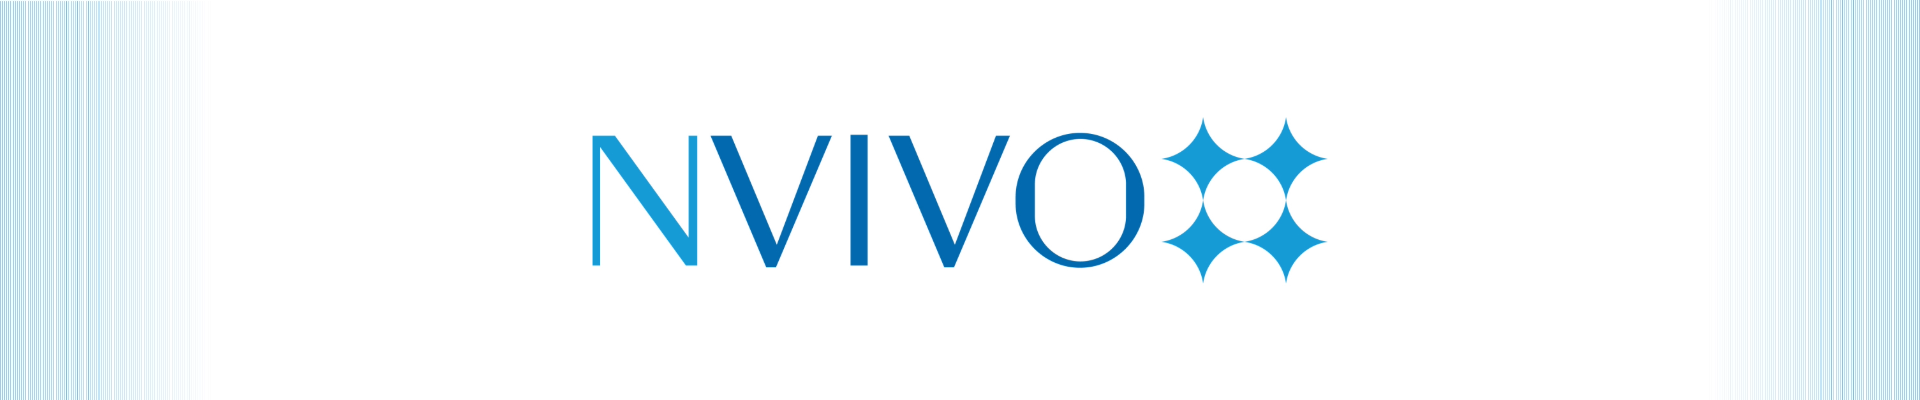 NVivo Banner